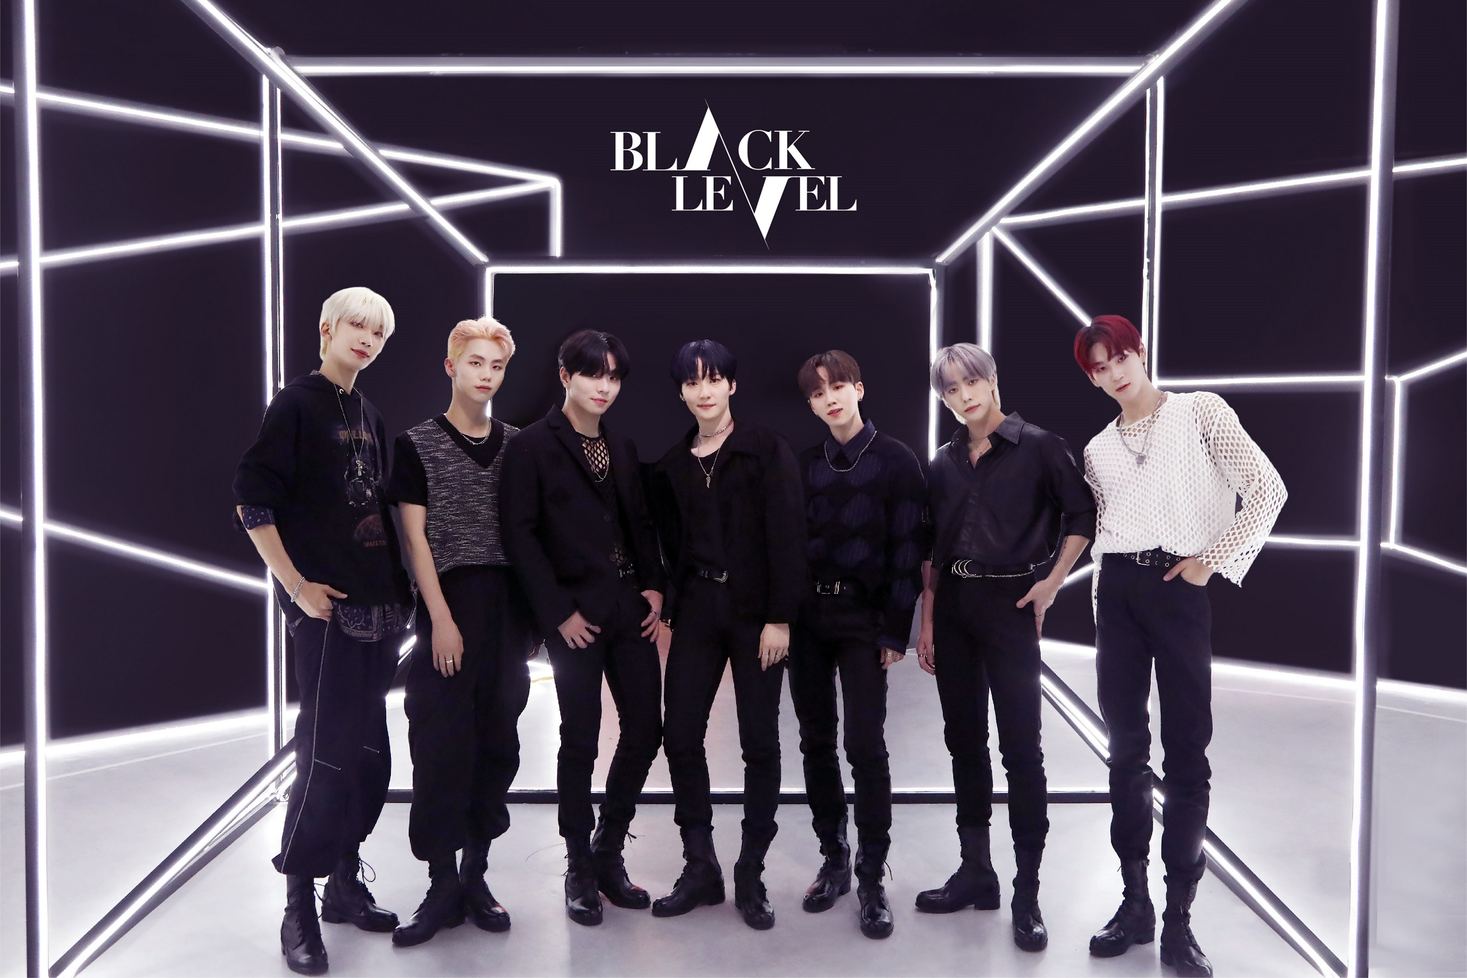 21年冬 韓国デビュー 新鋭男性7人組韓国アイドルグループ Black Level をnexus Bankが応援 Nexus Bank株式会社のプレスリリース